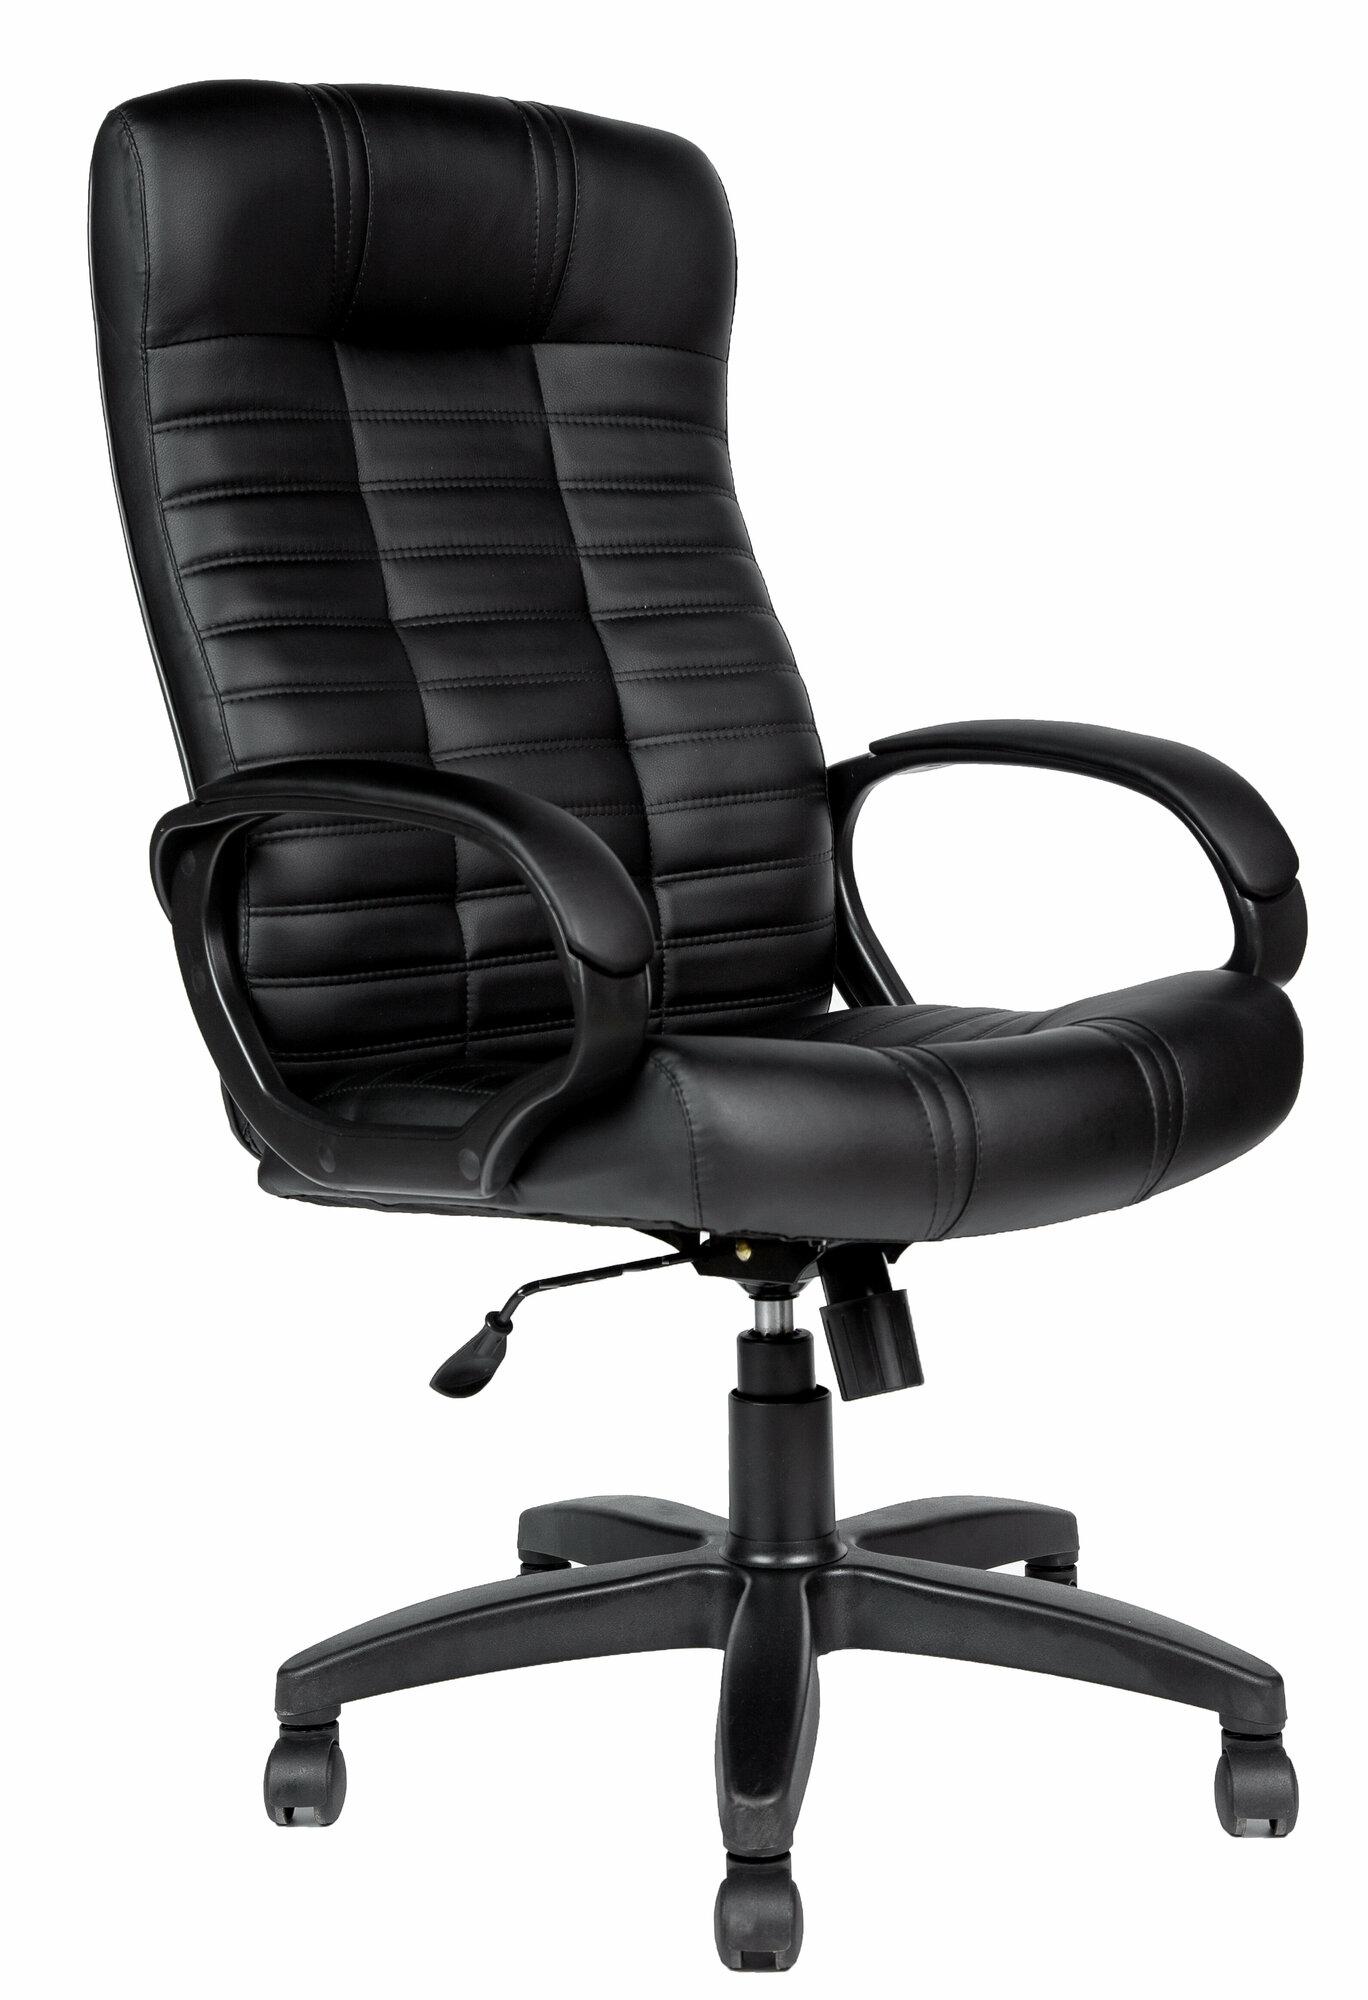 Кресло компьютерное Евростиль, игровое кресло Атлант Ультра SOFT, экокожа черная